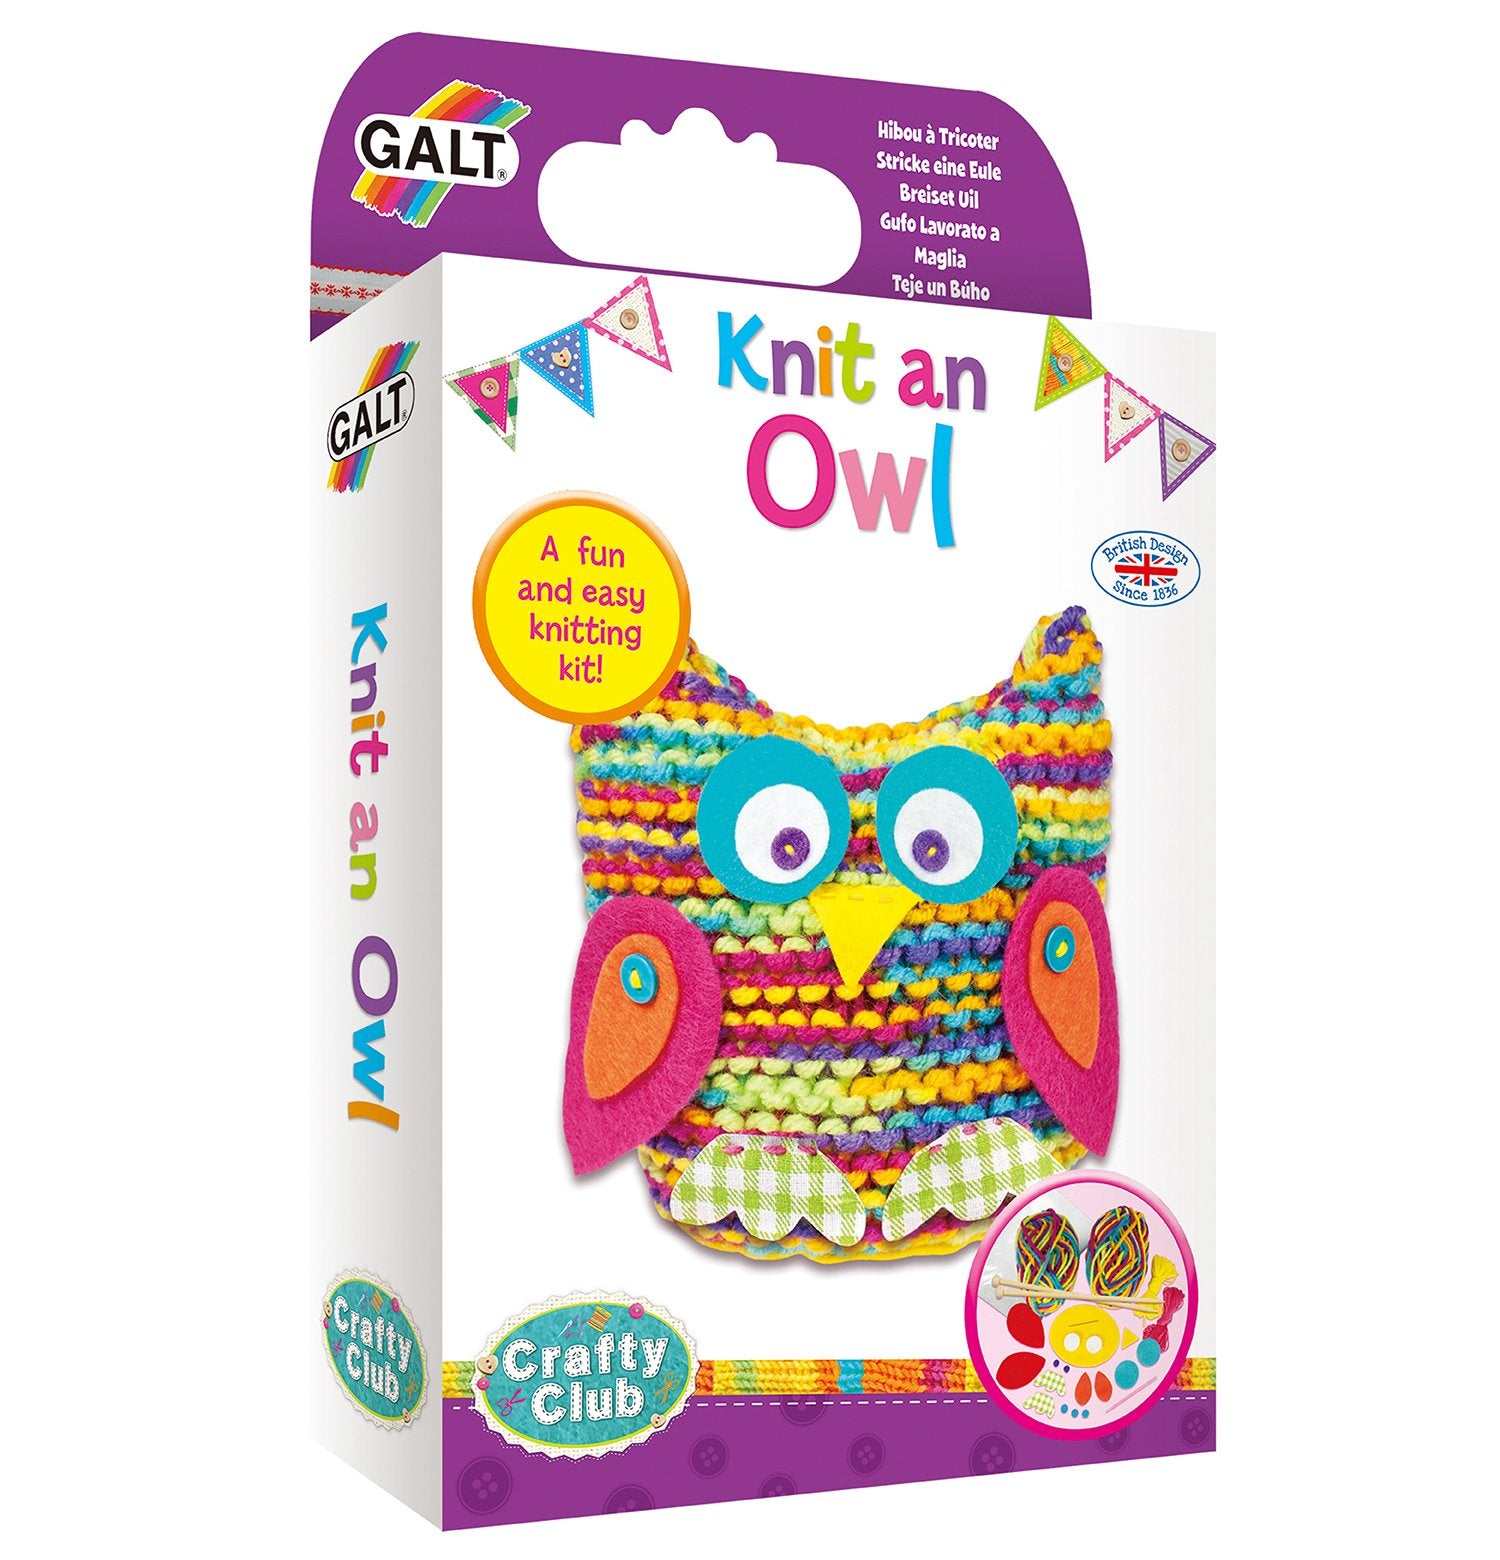 Knit an Owl - Galt